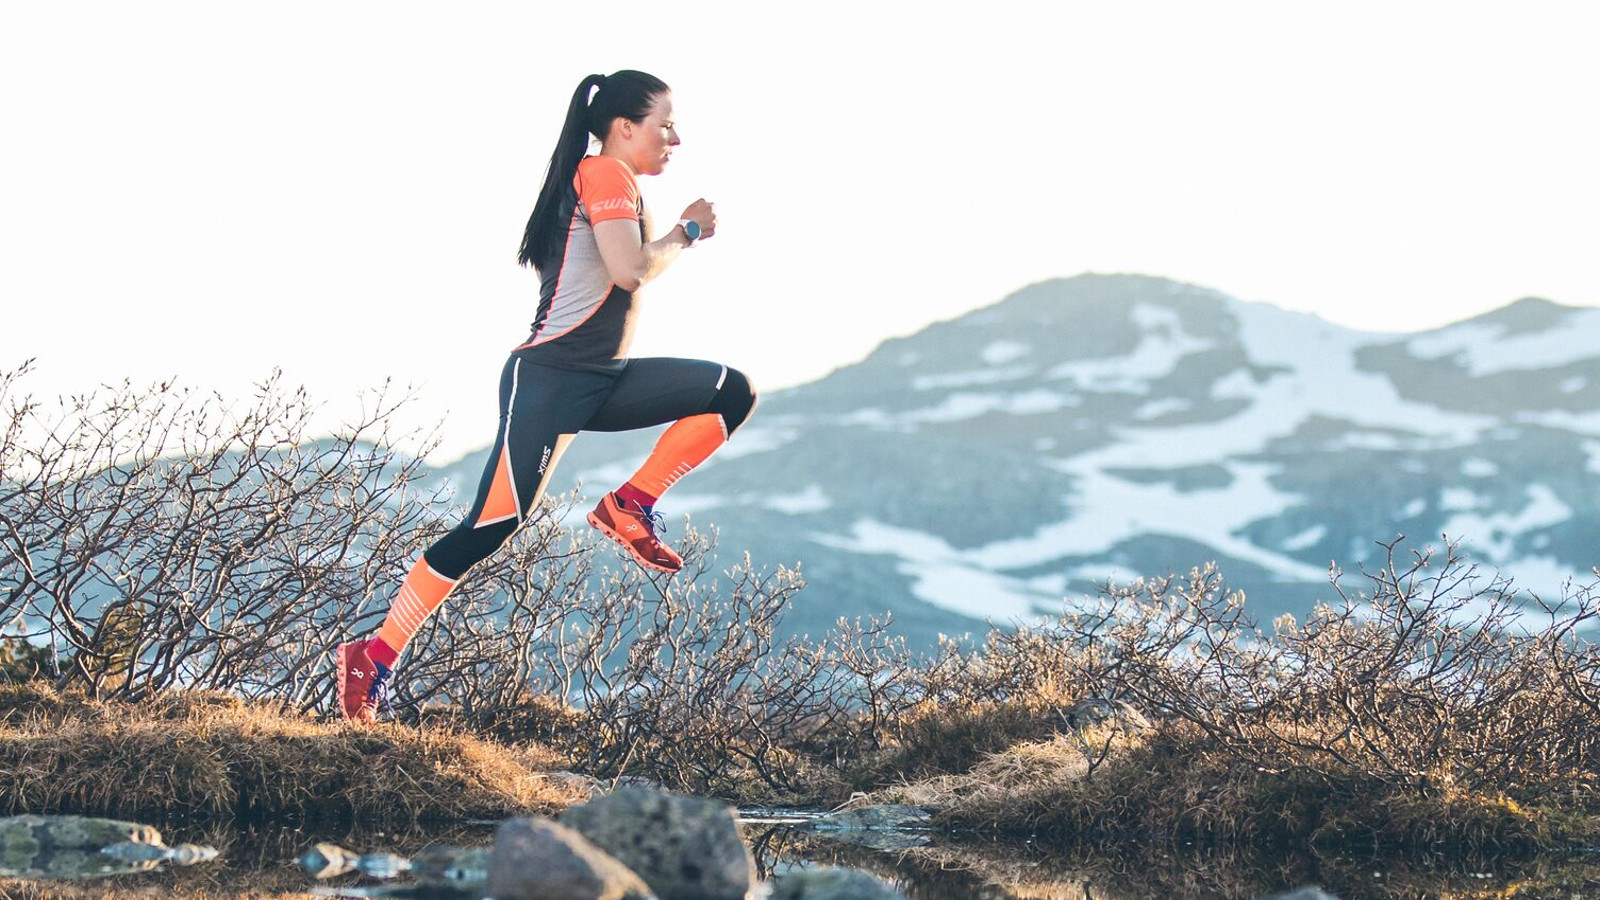 Kuvassa on Krista Pärmäkoski hyppäämässä vuoristossa hyppäämässä ojan yli. Takana on pensaita. Taustalla näkyy vuoristoa. Hänellä on musta-oranssi treeniasu.